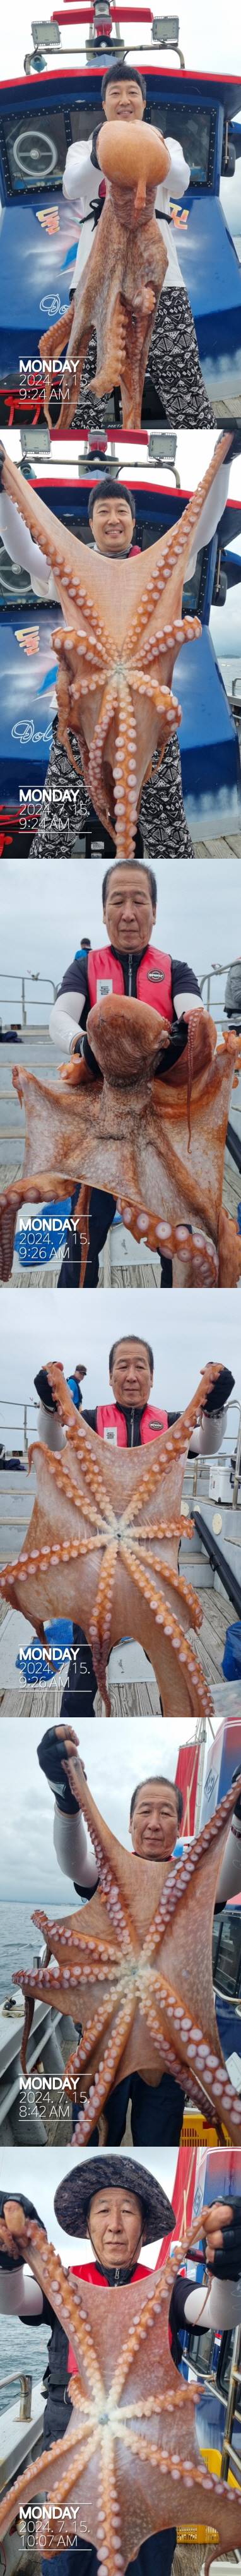 22인승 돌핀호 / 대왕문어 낚시 조황입니다